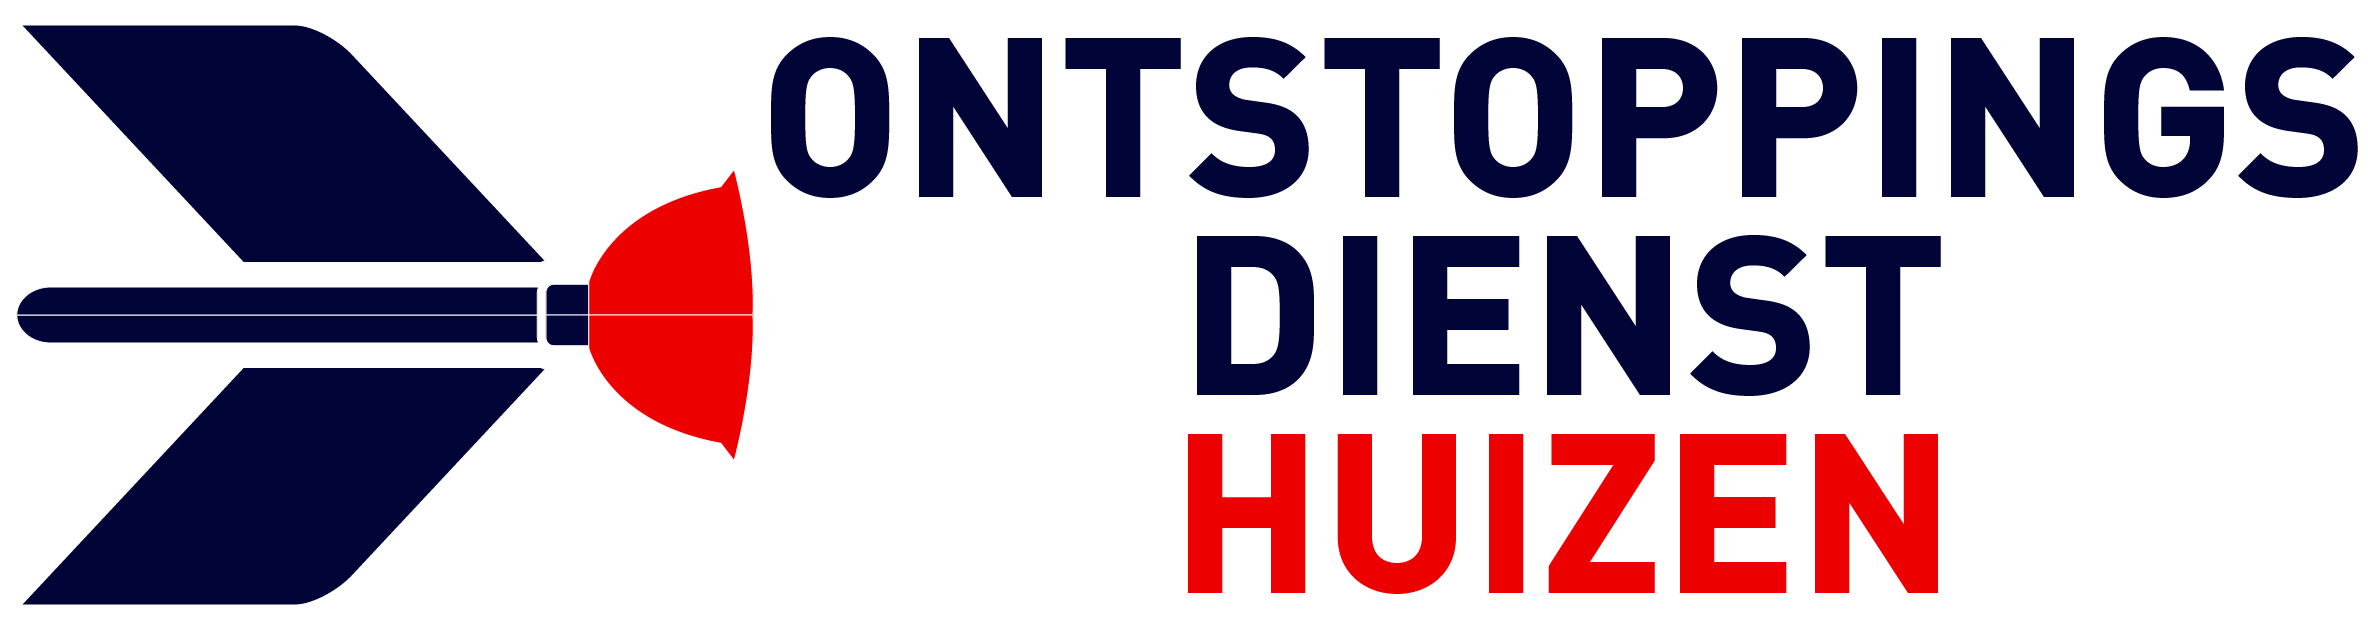 Ontstoppingsdienst Huizen logo